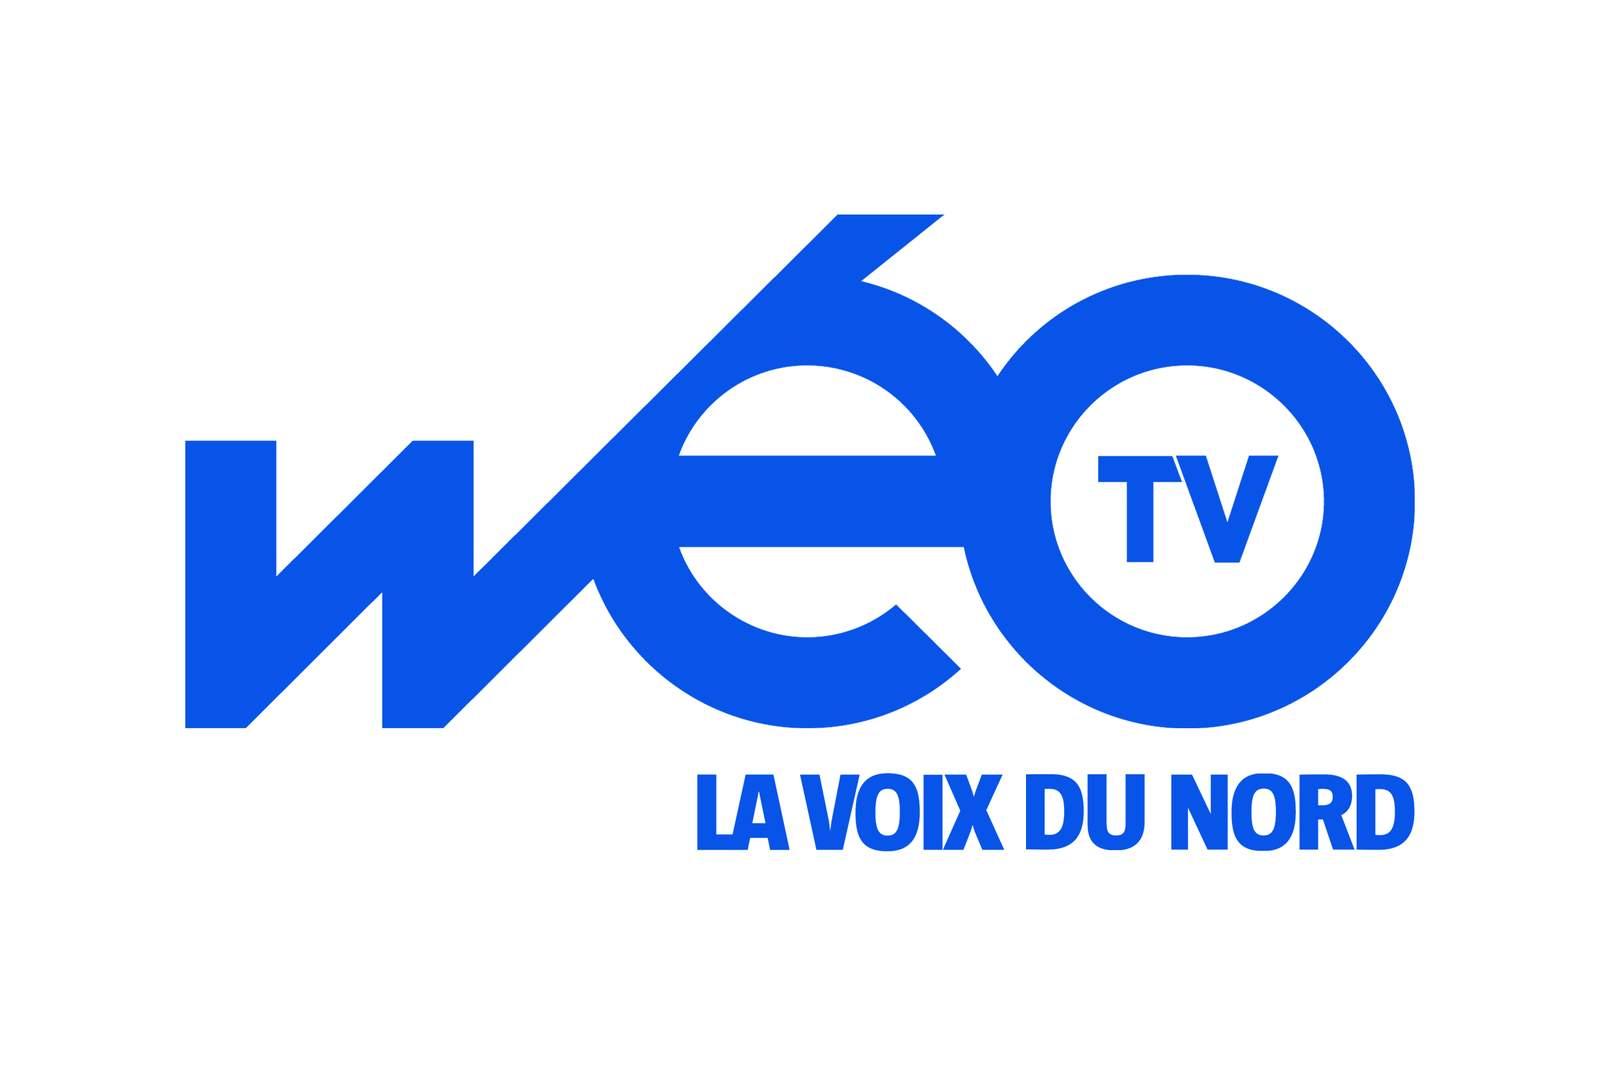 Weo TV - La Voix du Nord